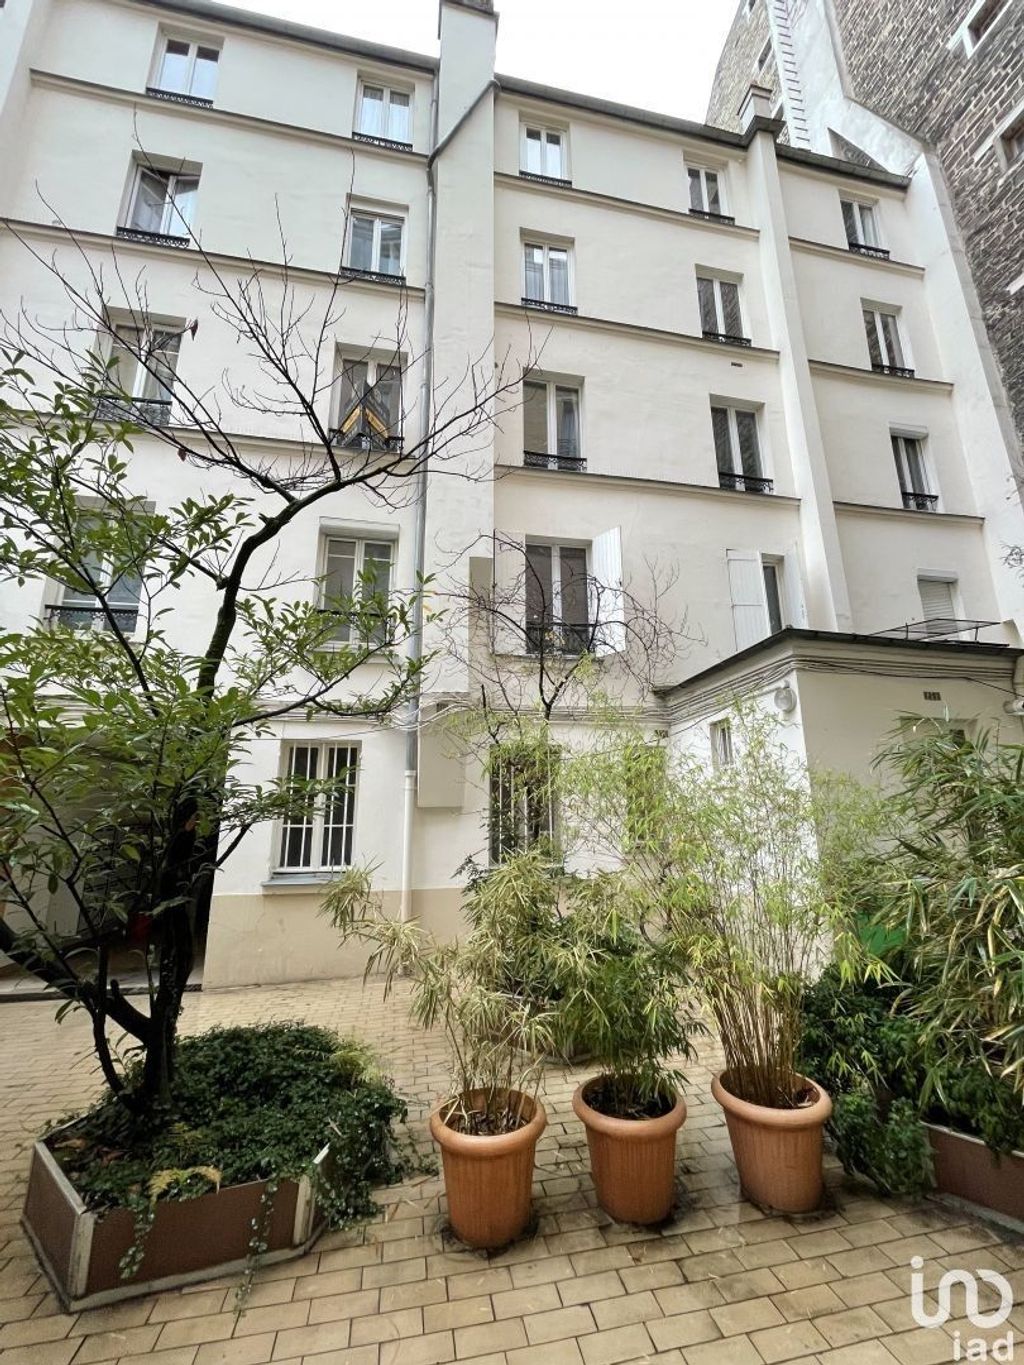 Achat studio à vendre 22 m² - Paris 13ème arrondissement